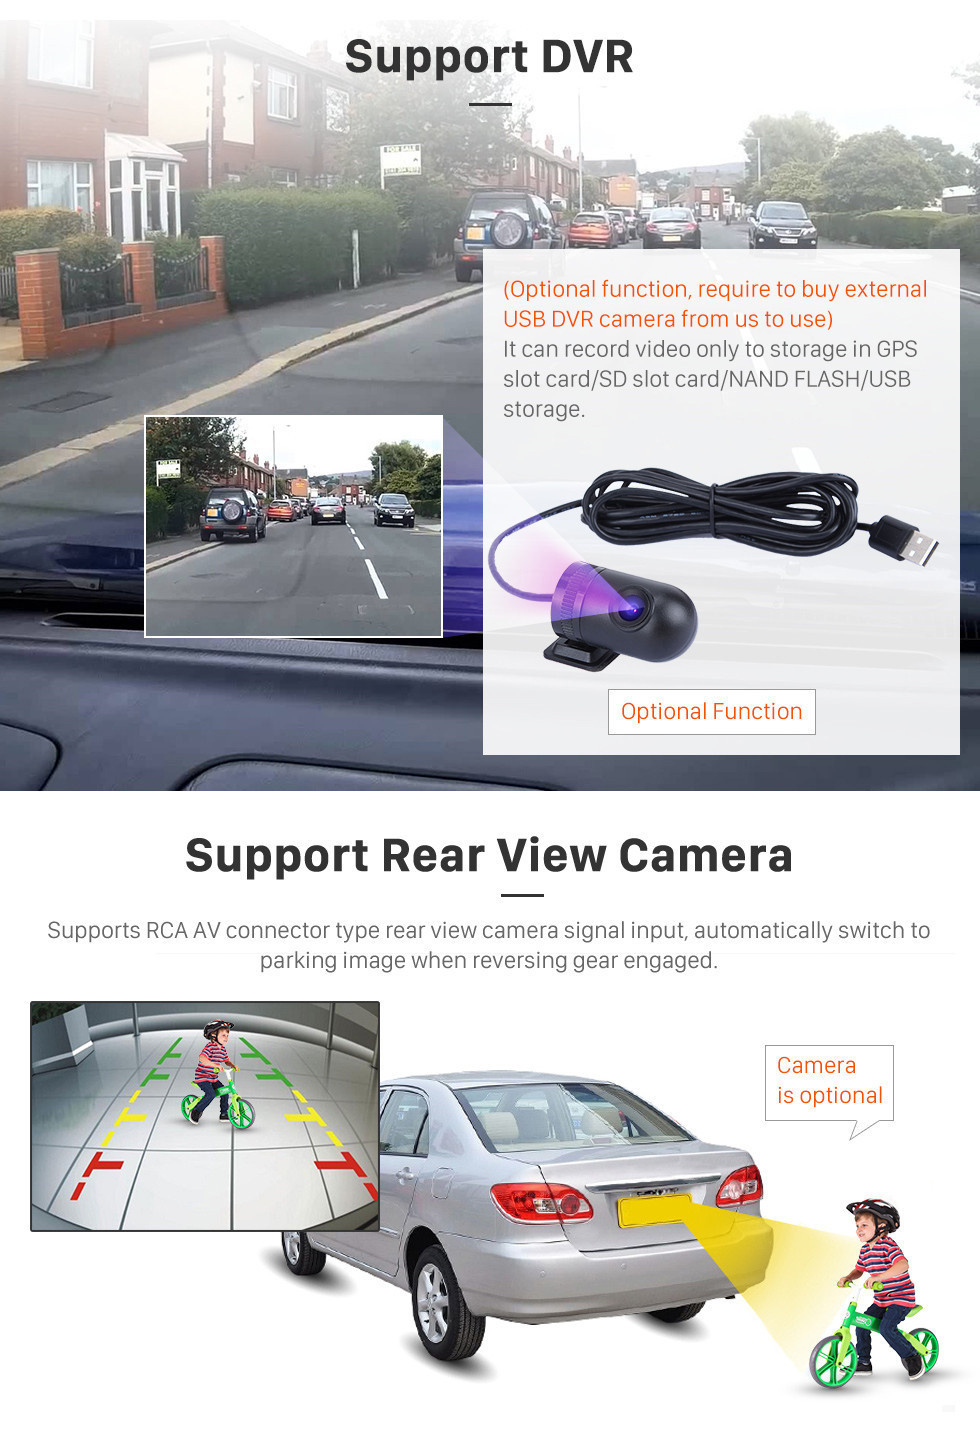 Seicane 2015-2018 Chevrolet Spark Beat Daewoo Martiz Android 11.0 9 pulgadas Navegación GPS Radio Bluetooth Pantalla táctil Compatible con Carplay TPMS 1080P